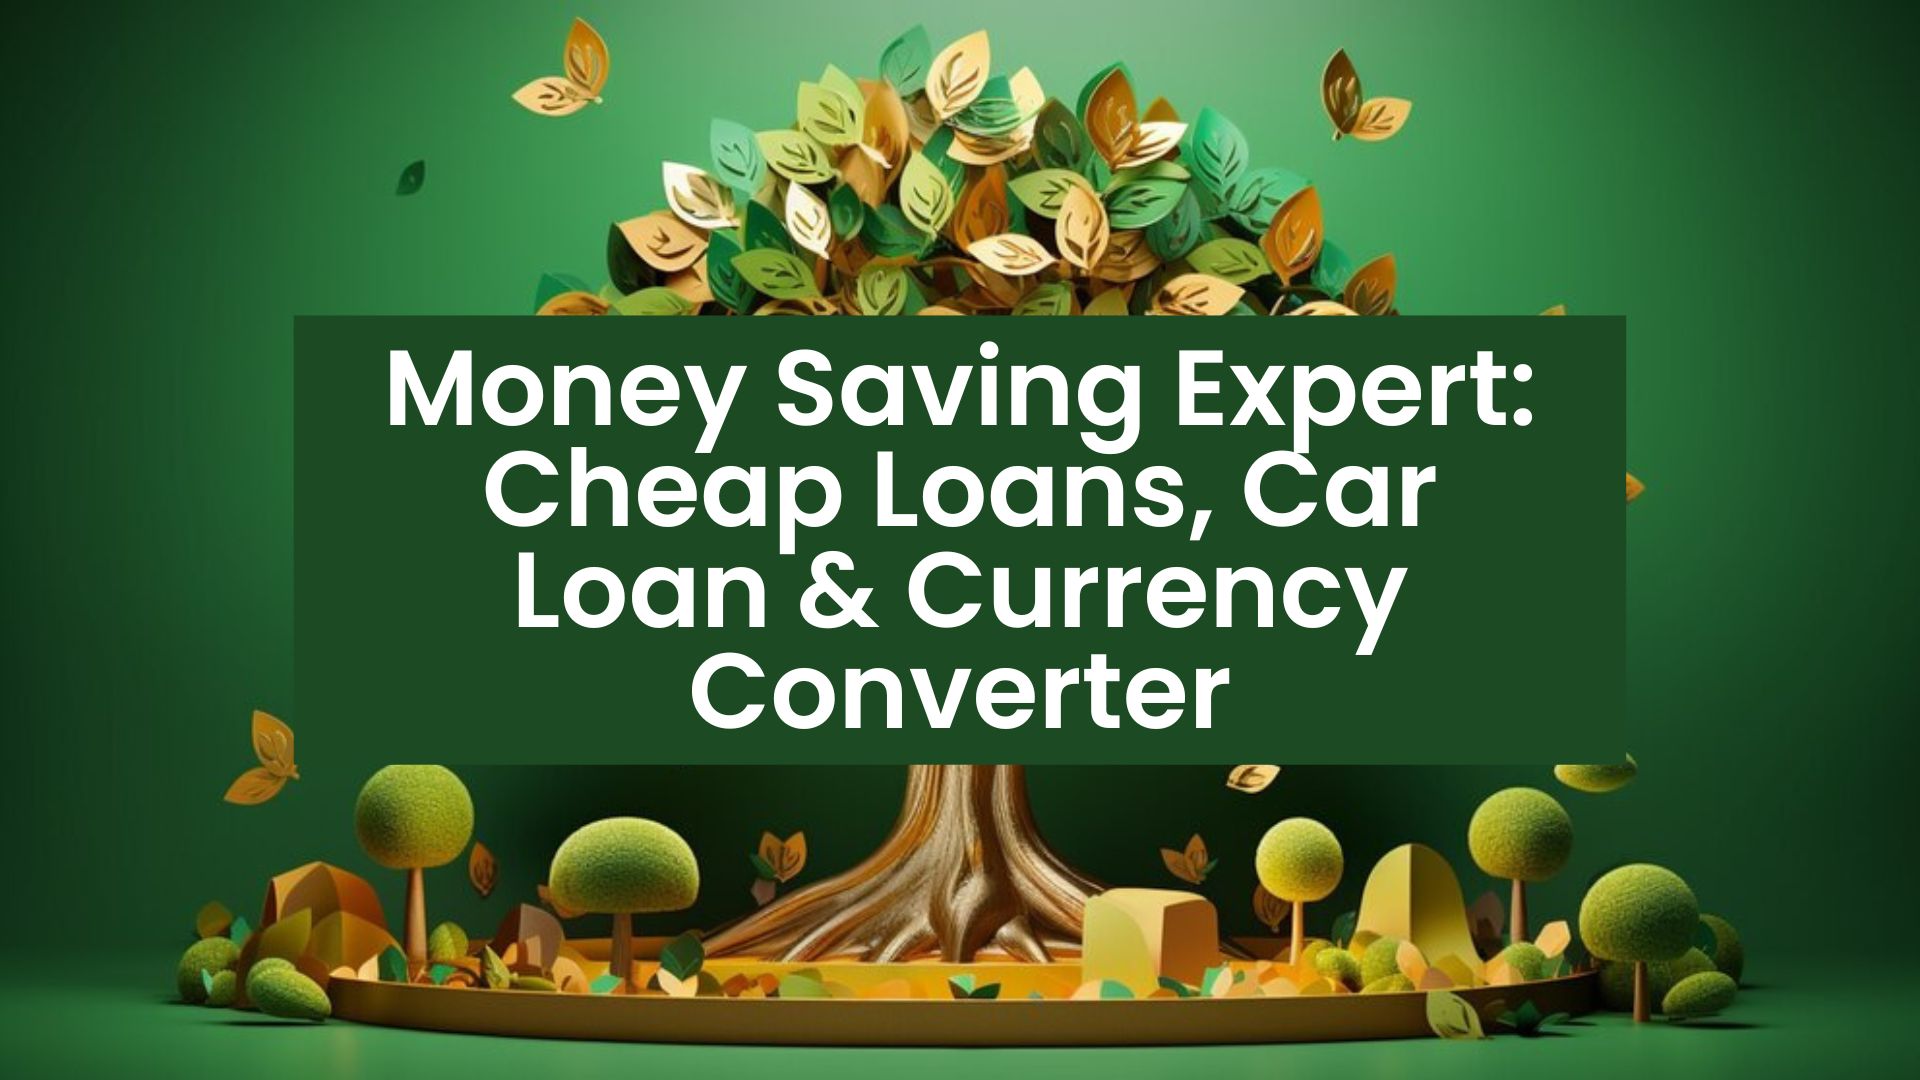 money saving expert cheap loans, money saving expert car loan, xe currency converter, google currency converter, oanda currency converter,